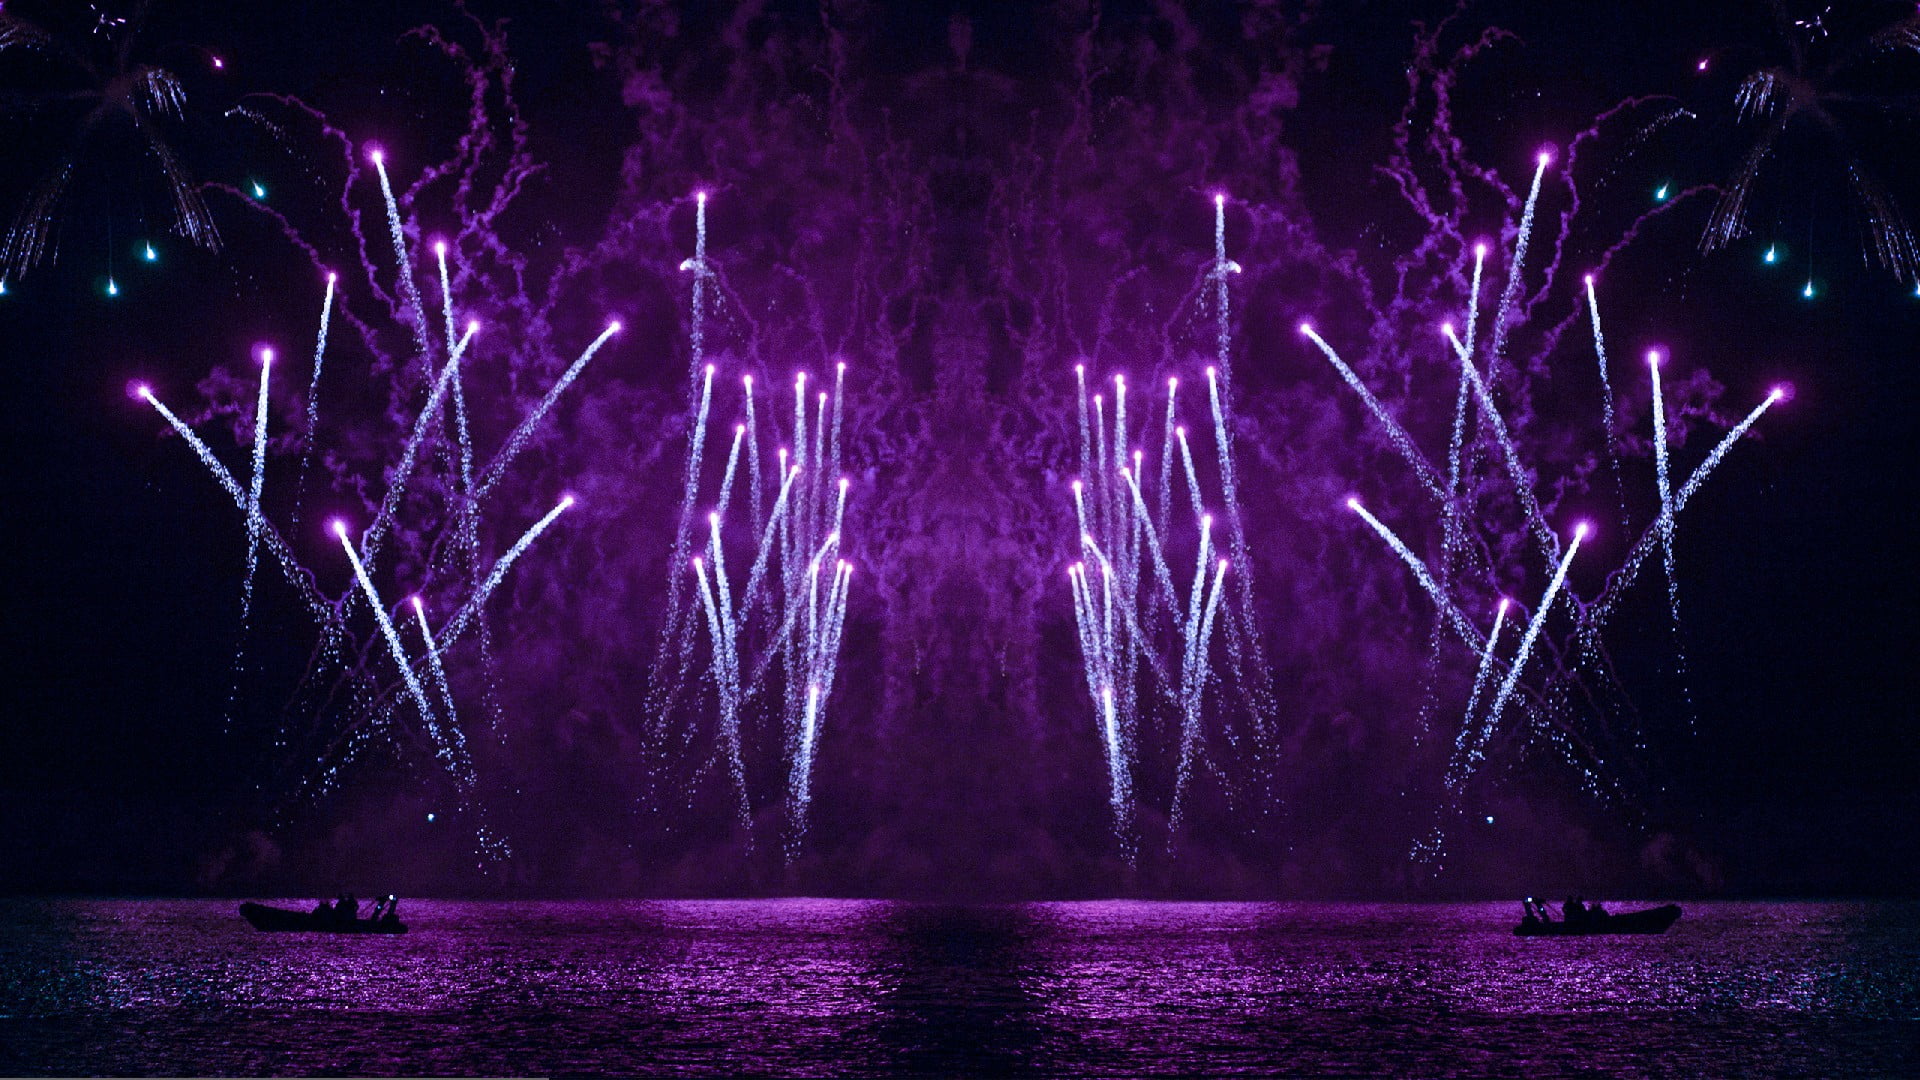 purple fireworks display, fireworks, purple, lightning